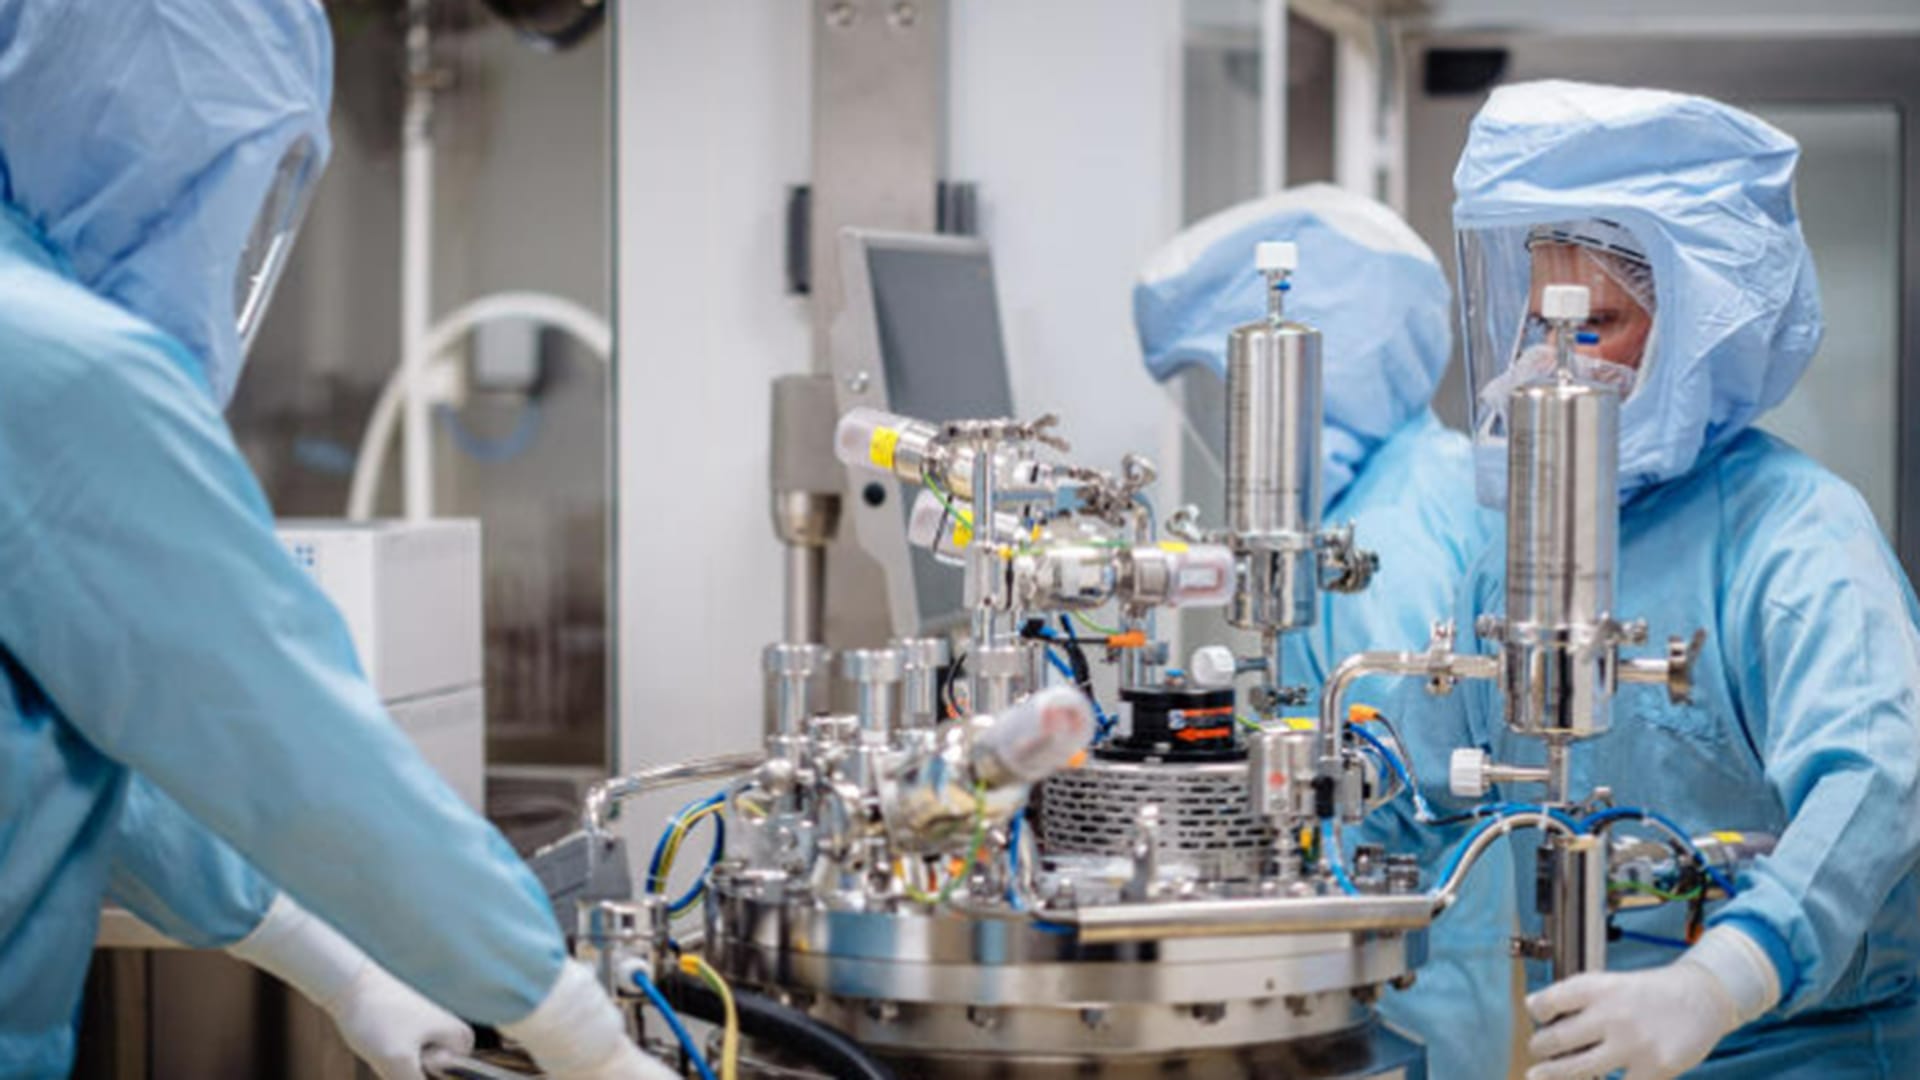 Labormitarbeiter in Schutzkleidung preparieren einen Abschnitt der Produktionsstrecke für den mRNA-Impfstoff